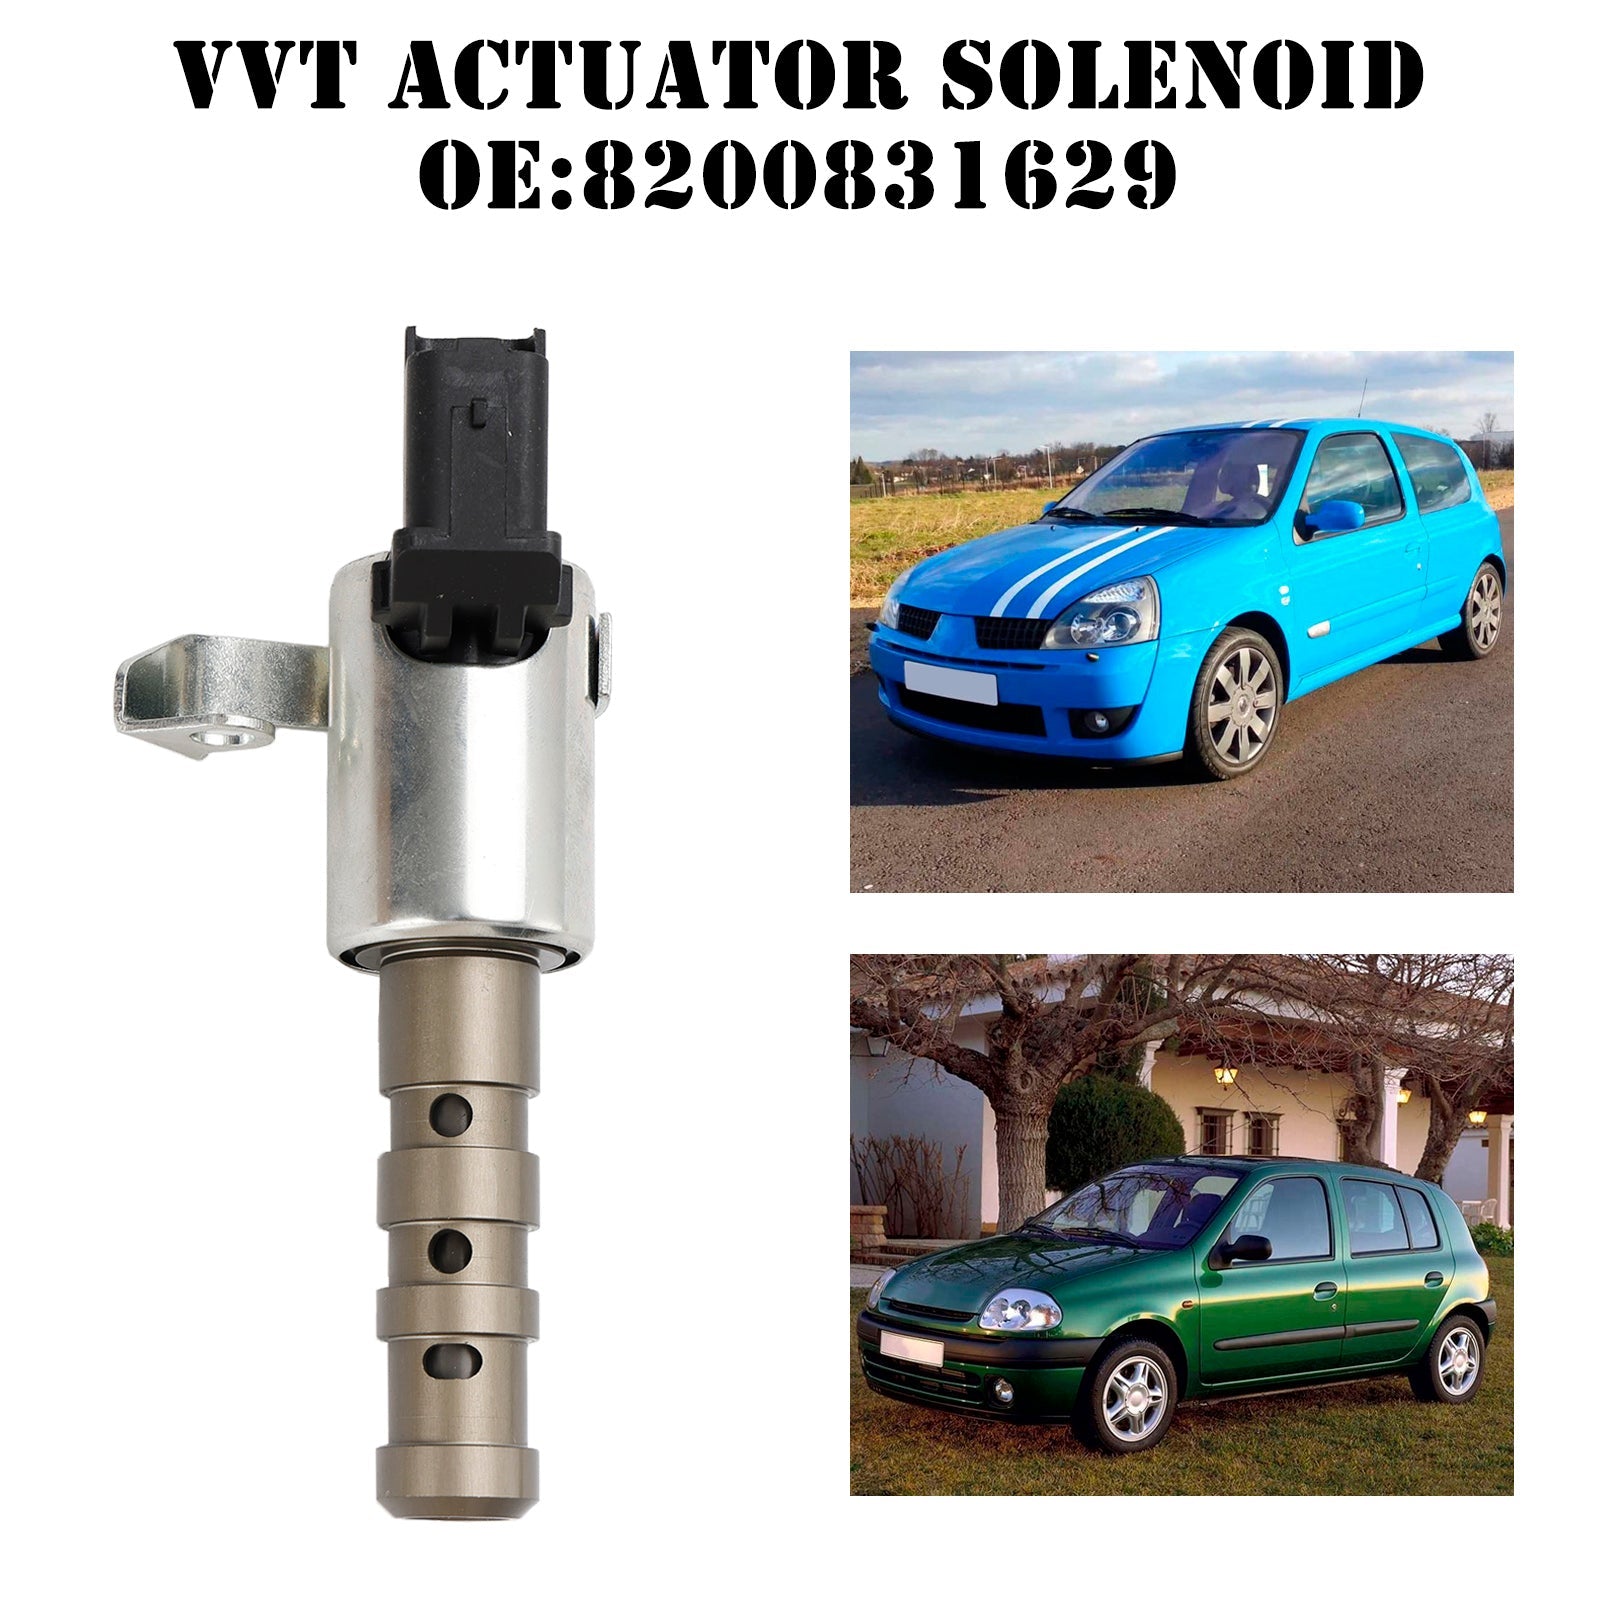 Solenoide attuatore VVT ​​a fasatura variabile della valvola del motore 8200831629 per Renault Clio